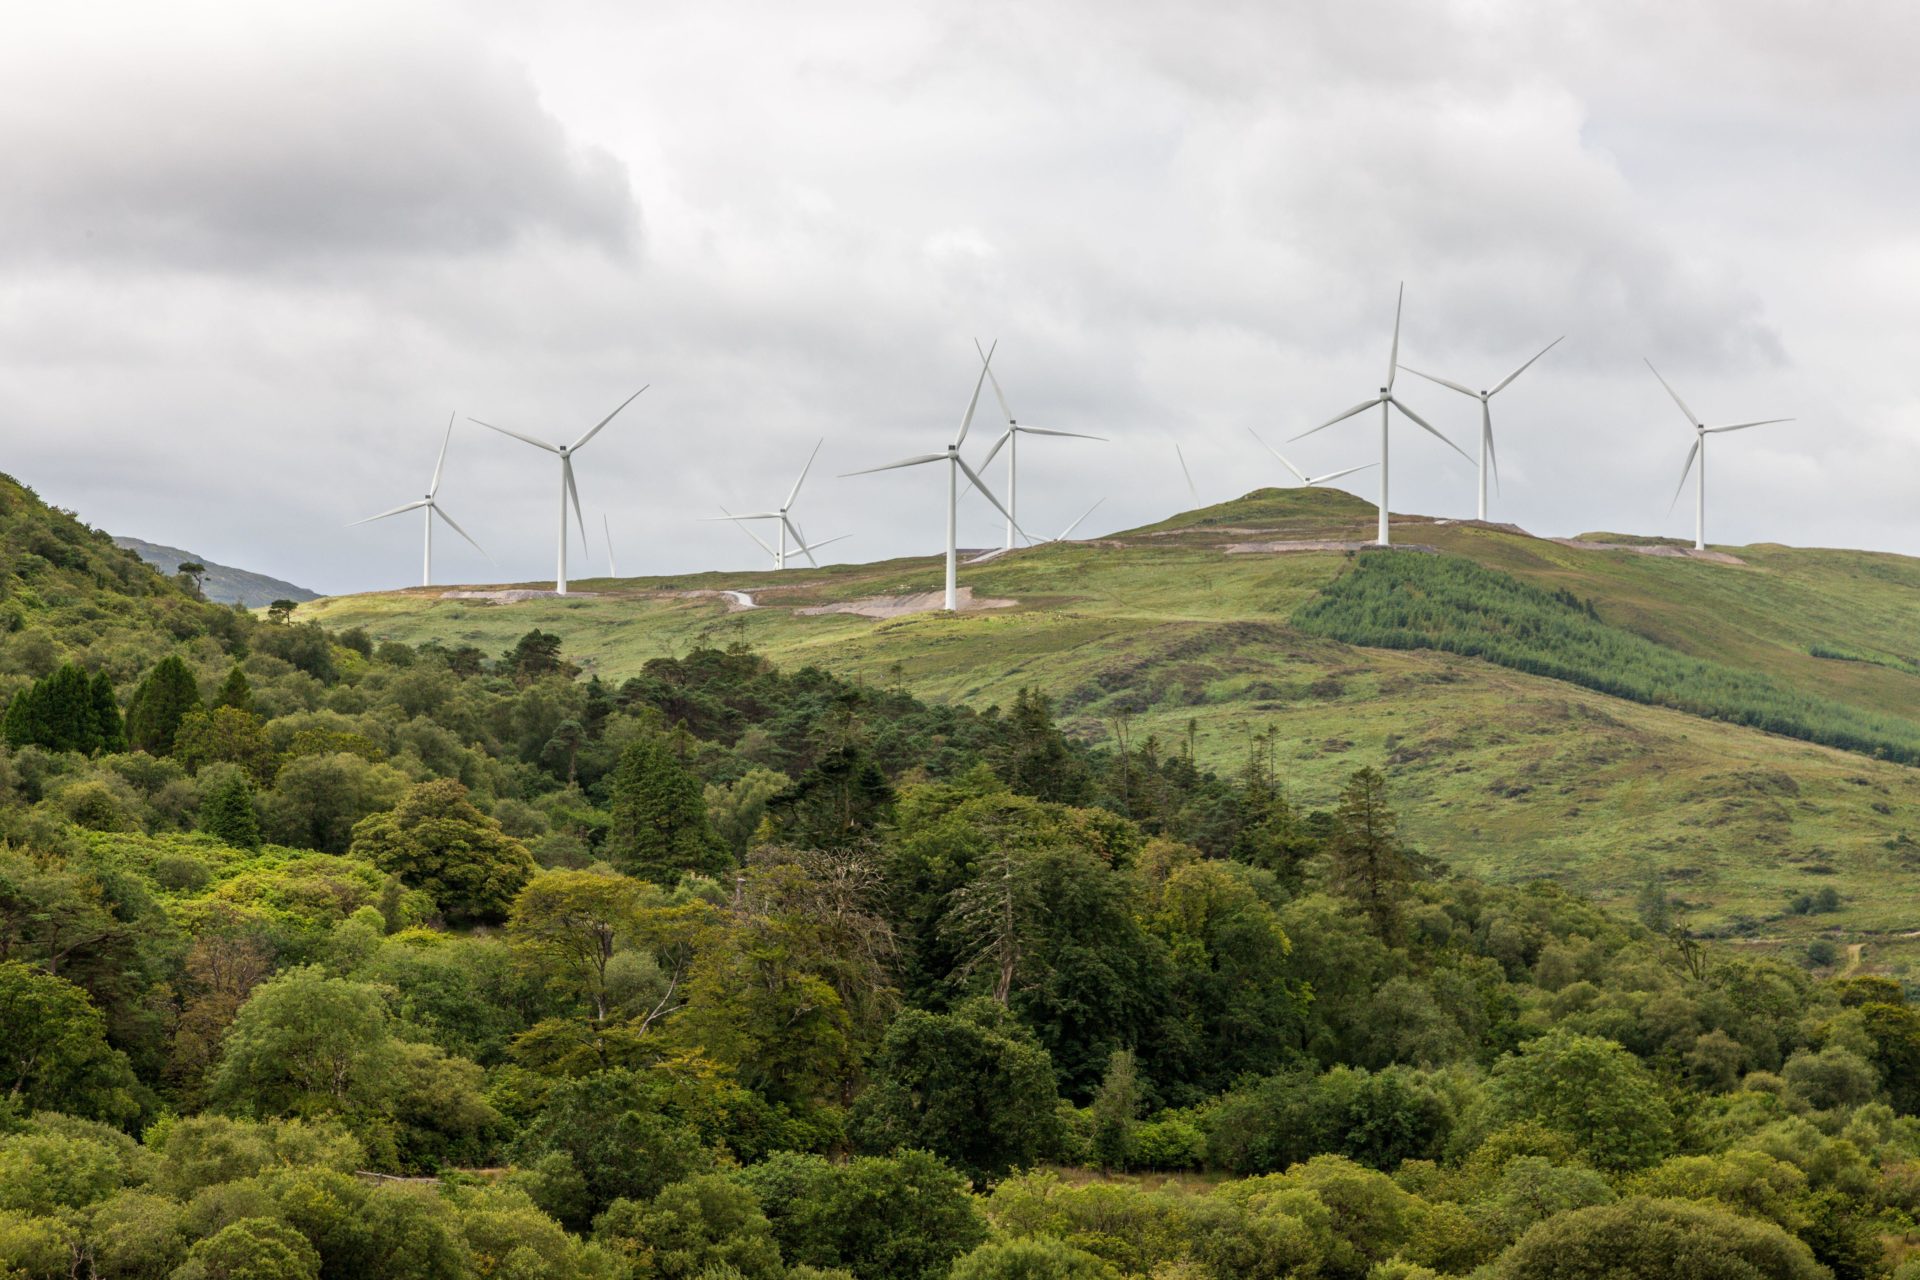 Wind turbines in Kilgarvan, Kerry. Image: David Creedon / Alamy